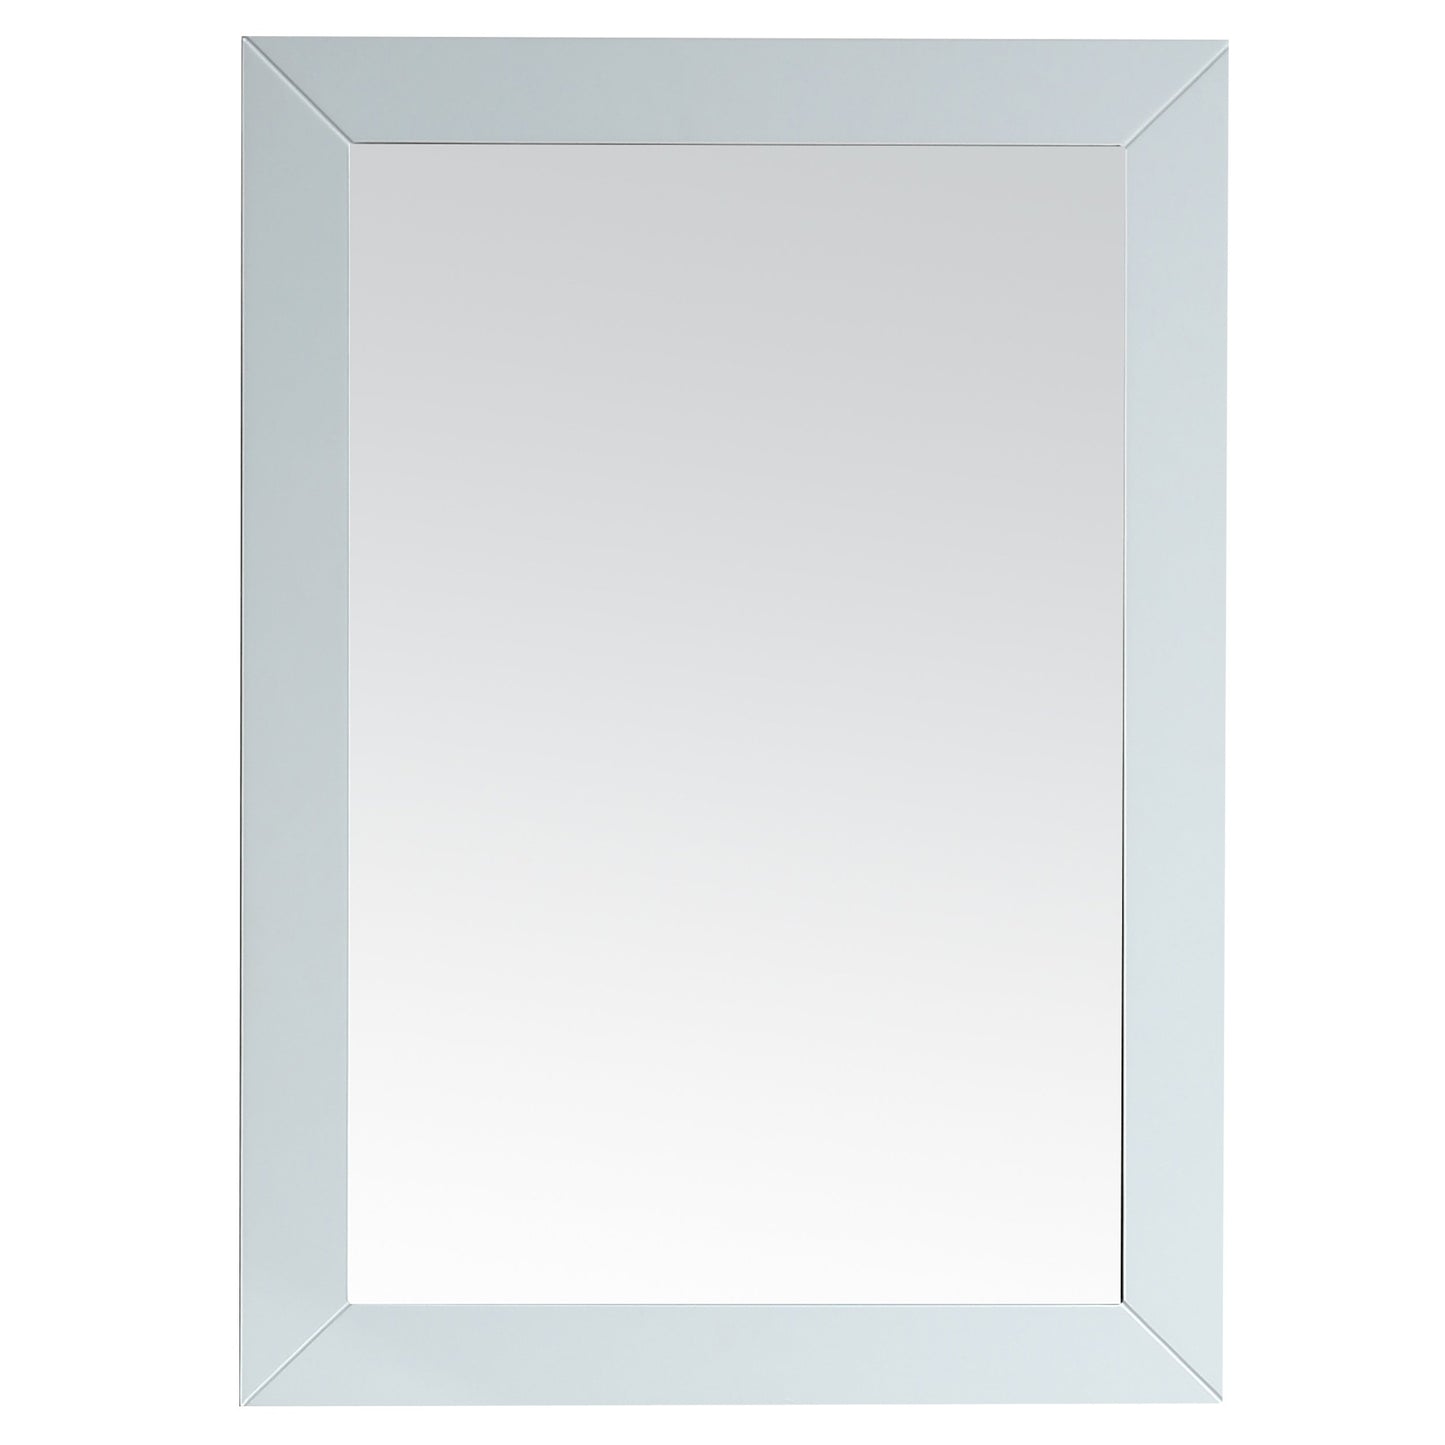 Eviva Acclaim Transitional White Bathroom Vanity Mirror - Luxe Bathroom Vanities Luxury Bathroom Fixtures Bathroom Furniture